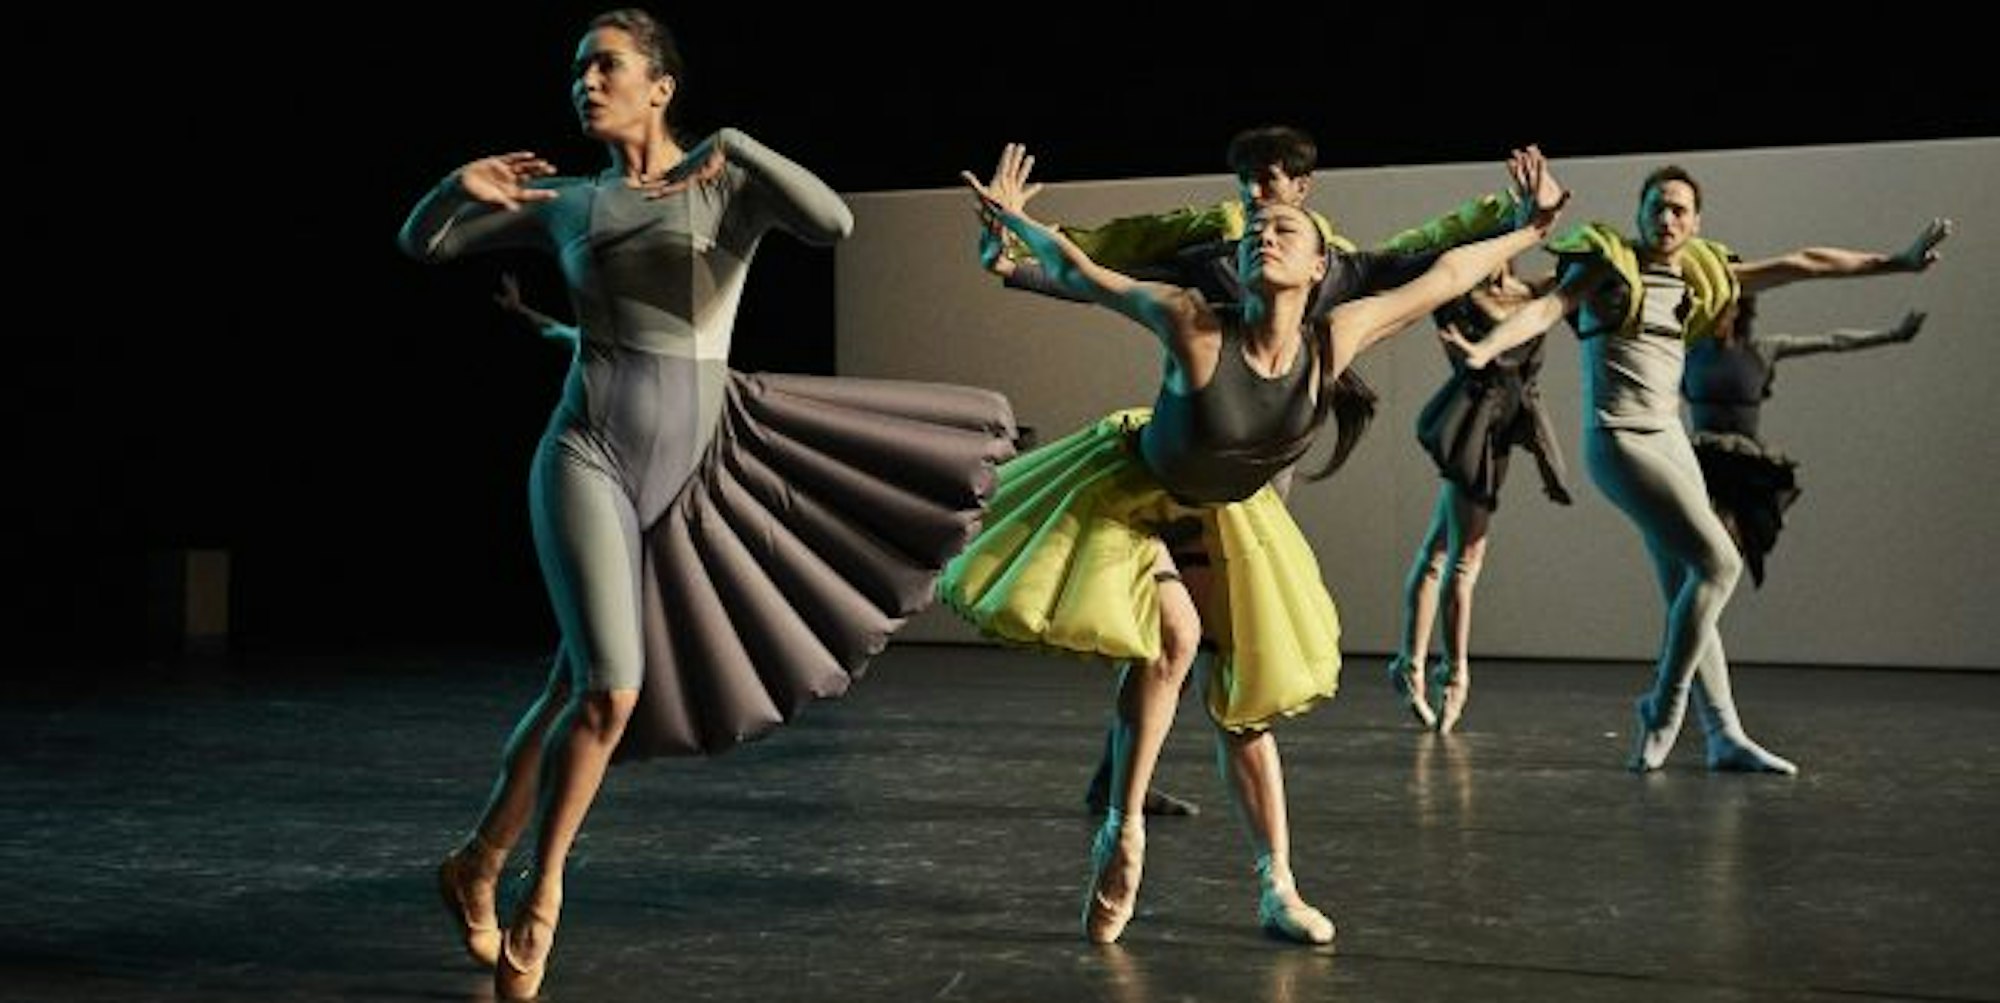 Tanzen mit größerem Abstand: Szene aus Richard Siegals Ballettabend: „On Body: BoD/ Made for Walking/ UNITXT“